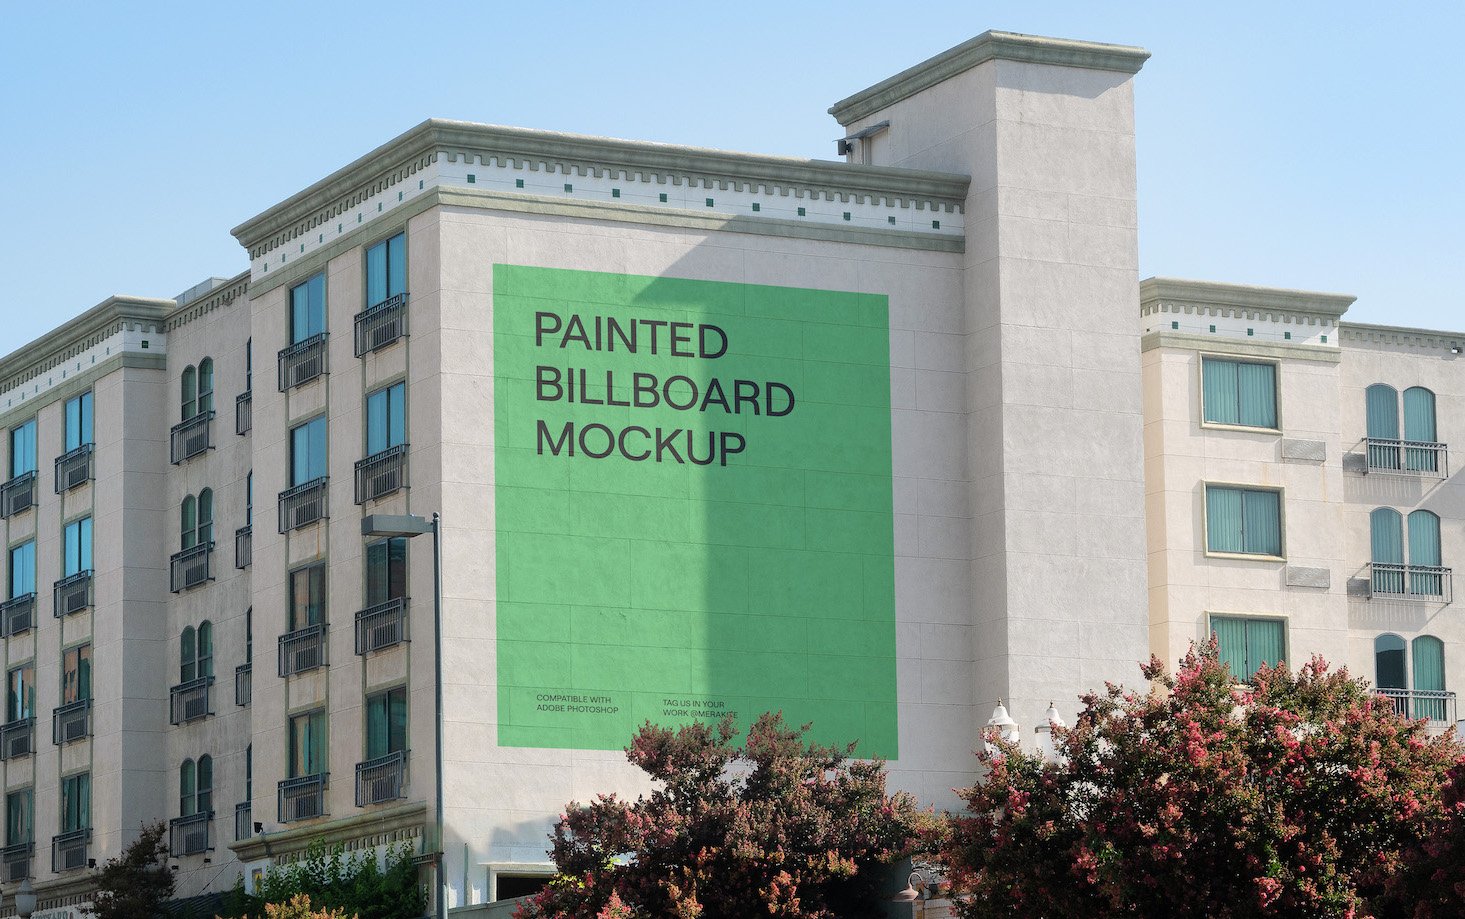 Urban Billboard Mural Mockup PSD preview image.